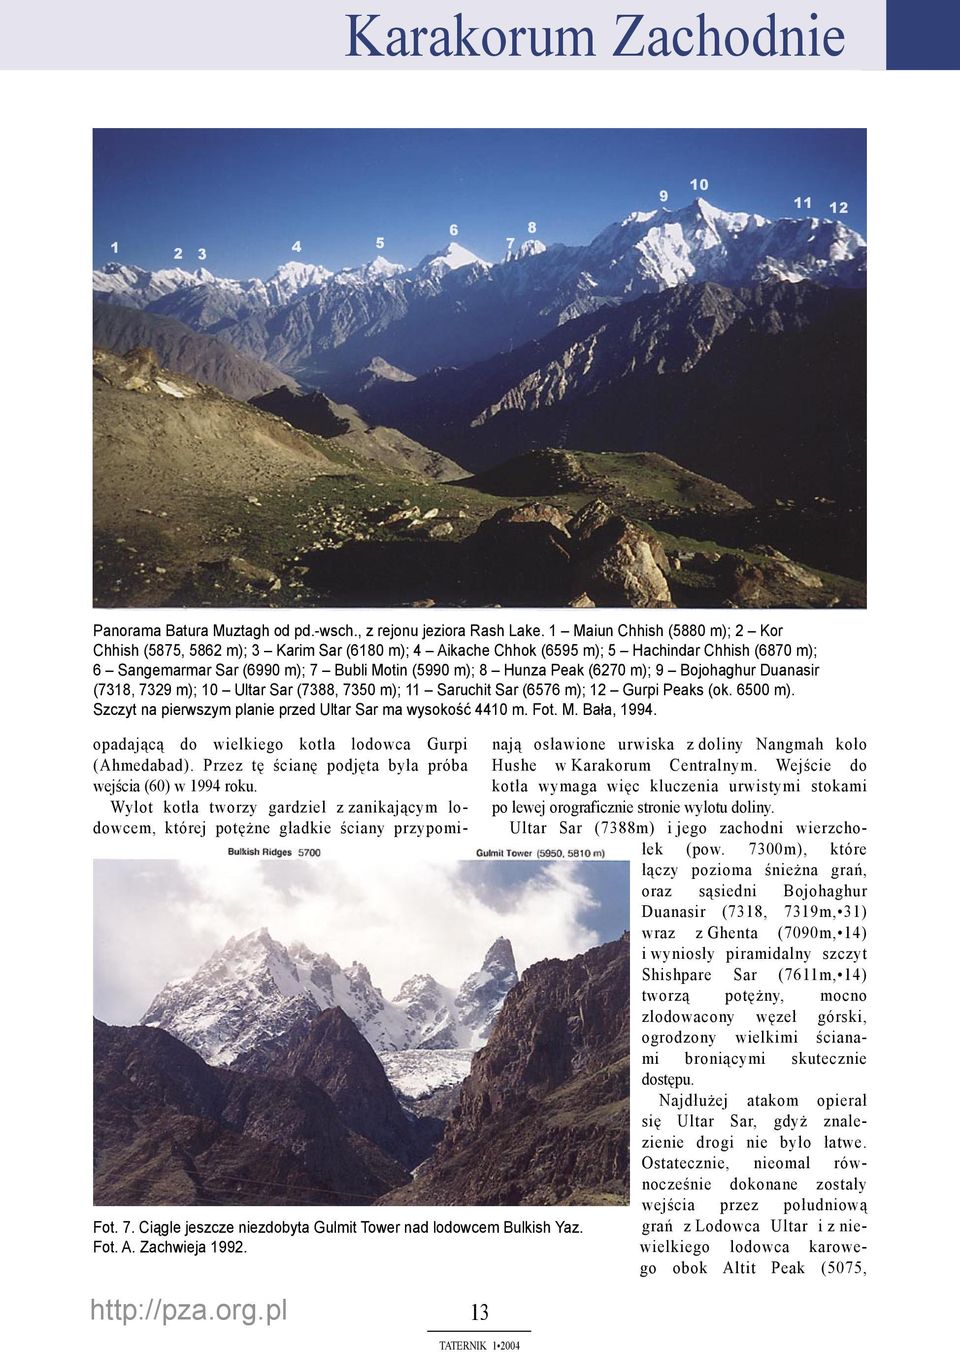 (6270 m); 9 Bojohaghur Duanasir (7318, 7329 m); 10 Ultar Sar (7388, 7350 m); 11 Saruchit Sar (6576 m); 12 Gurpi Peaks (ok. 6500 m). Szczyt na pierwszym planie przed Ultar Sar ma wysokość 4410 m. Fot.